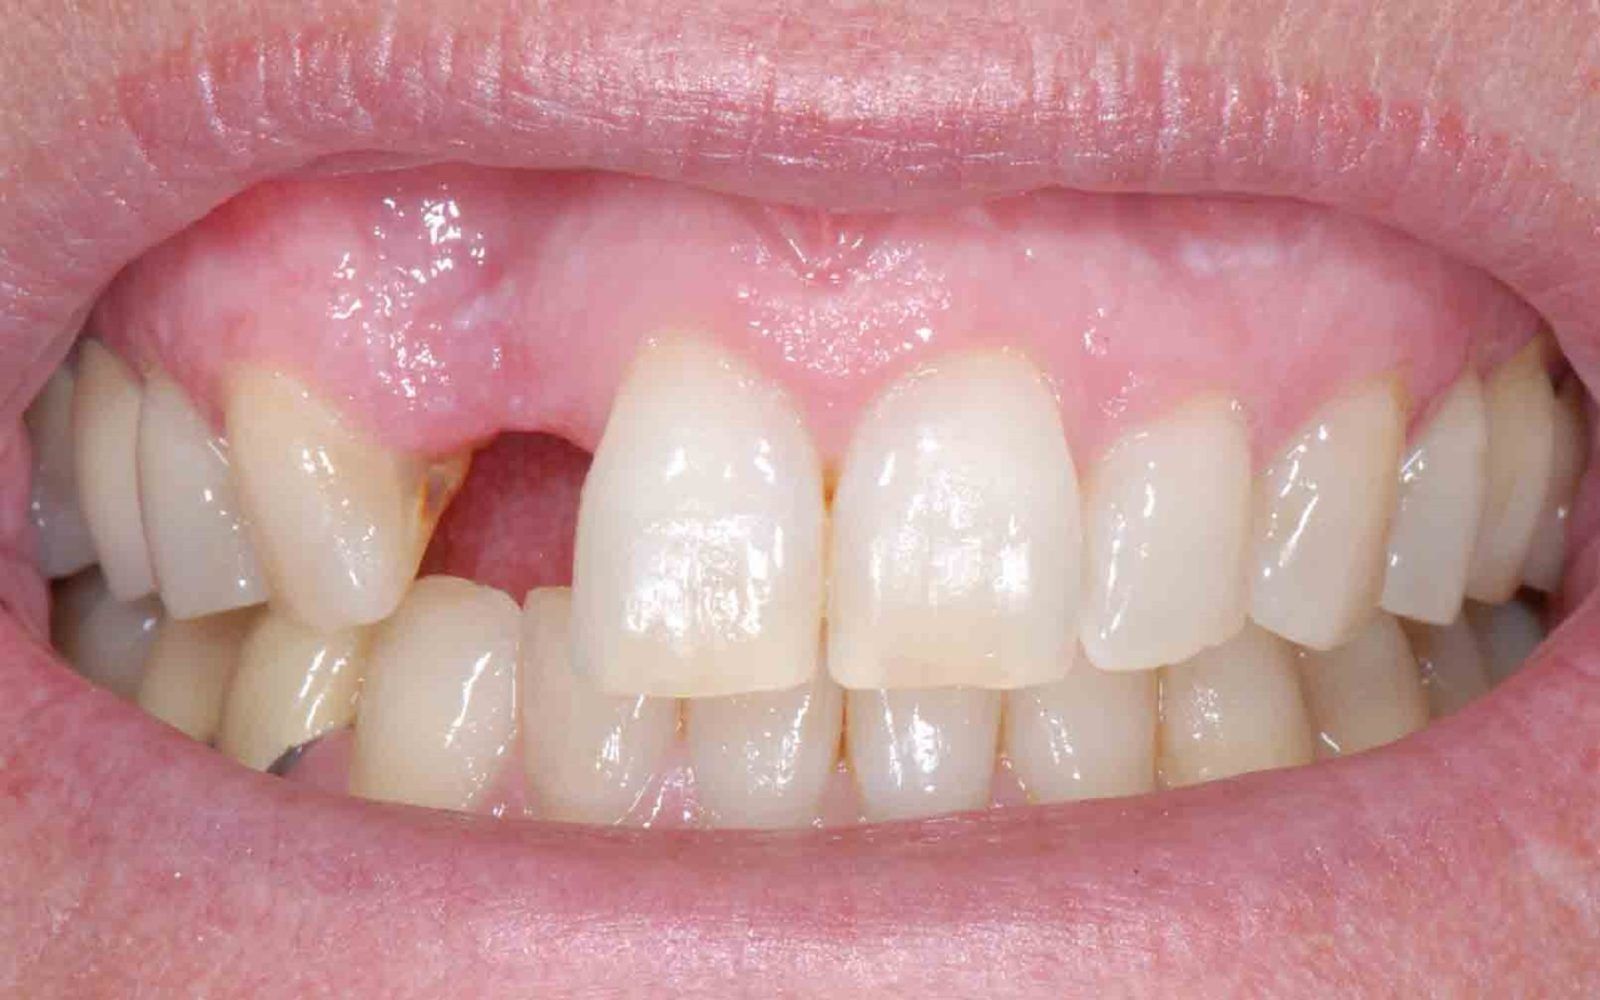 Kaybedilen dişlerin ağız sağlığına etkisi nedir?